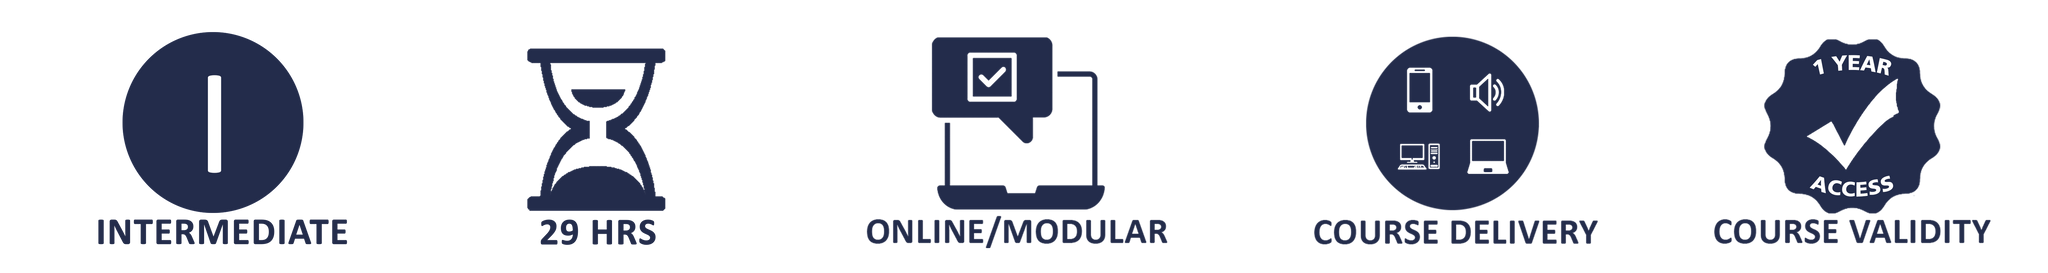 Mandatory Training for Domiciliary Care Workers - Online Training Package - The Mandatory Training Group UK -